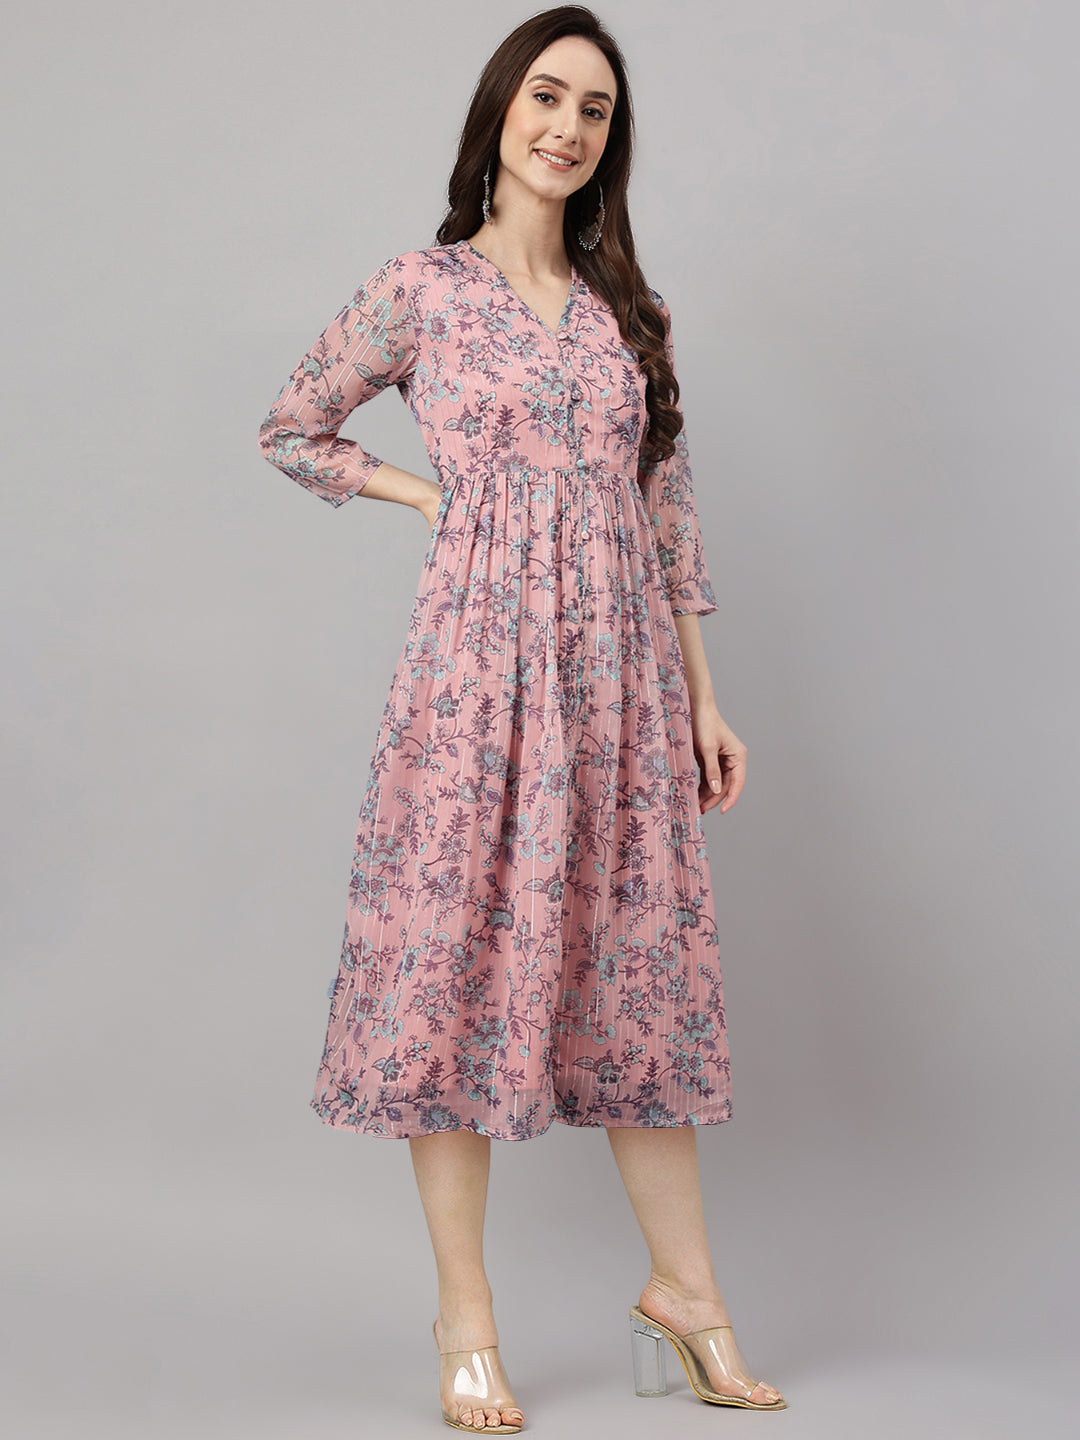 Women's Floral Printed Pink Chiffon Lurex Dress - Janasya USA